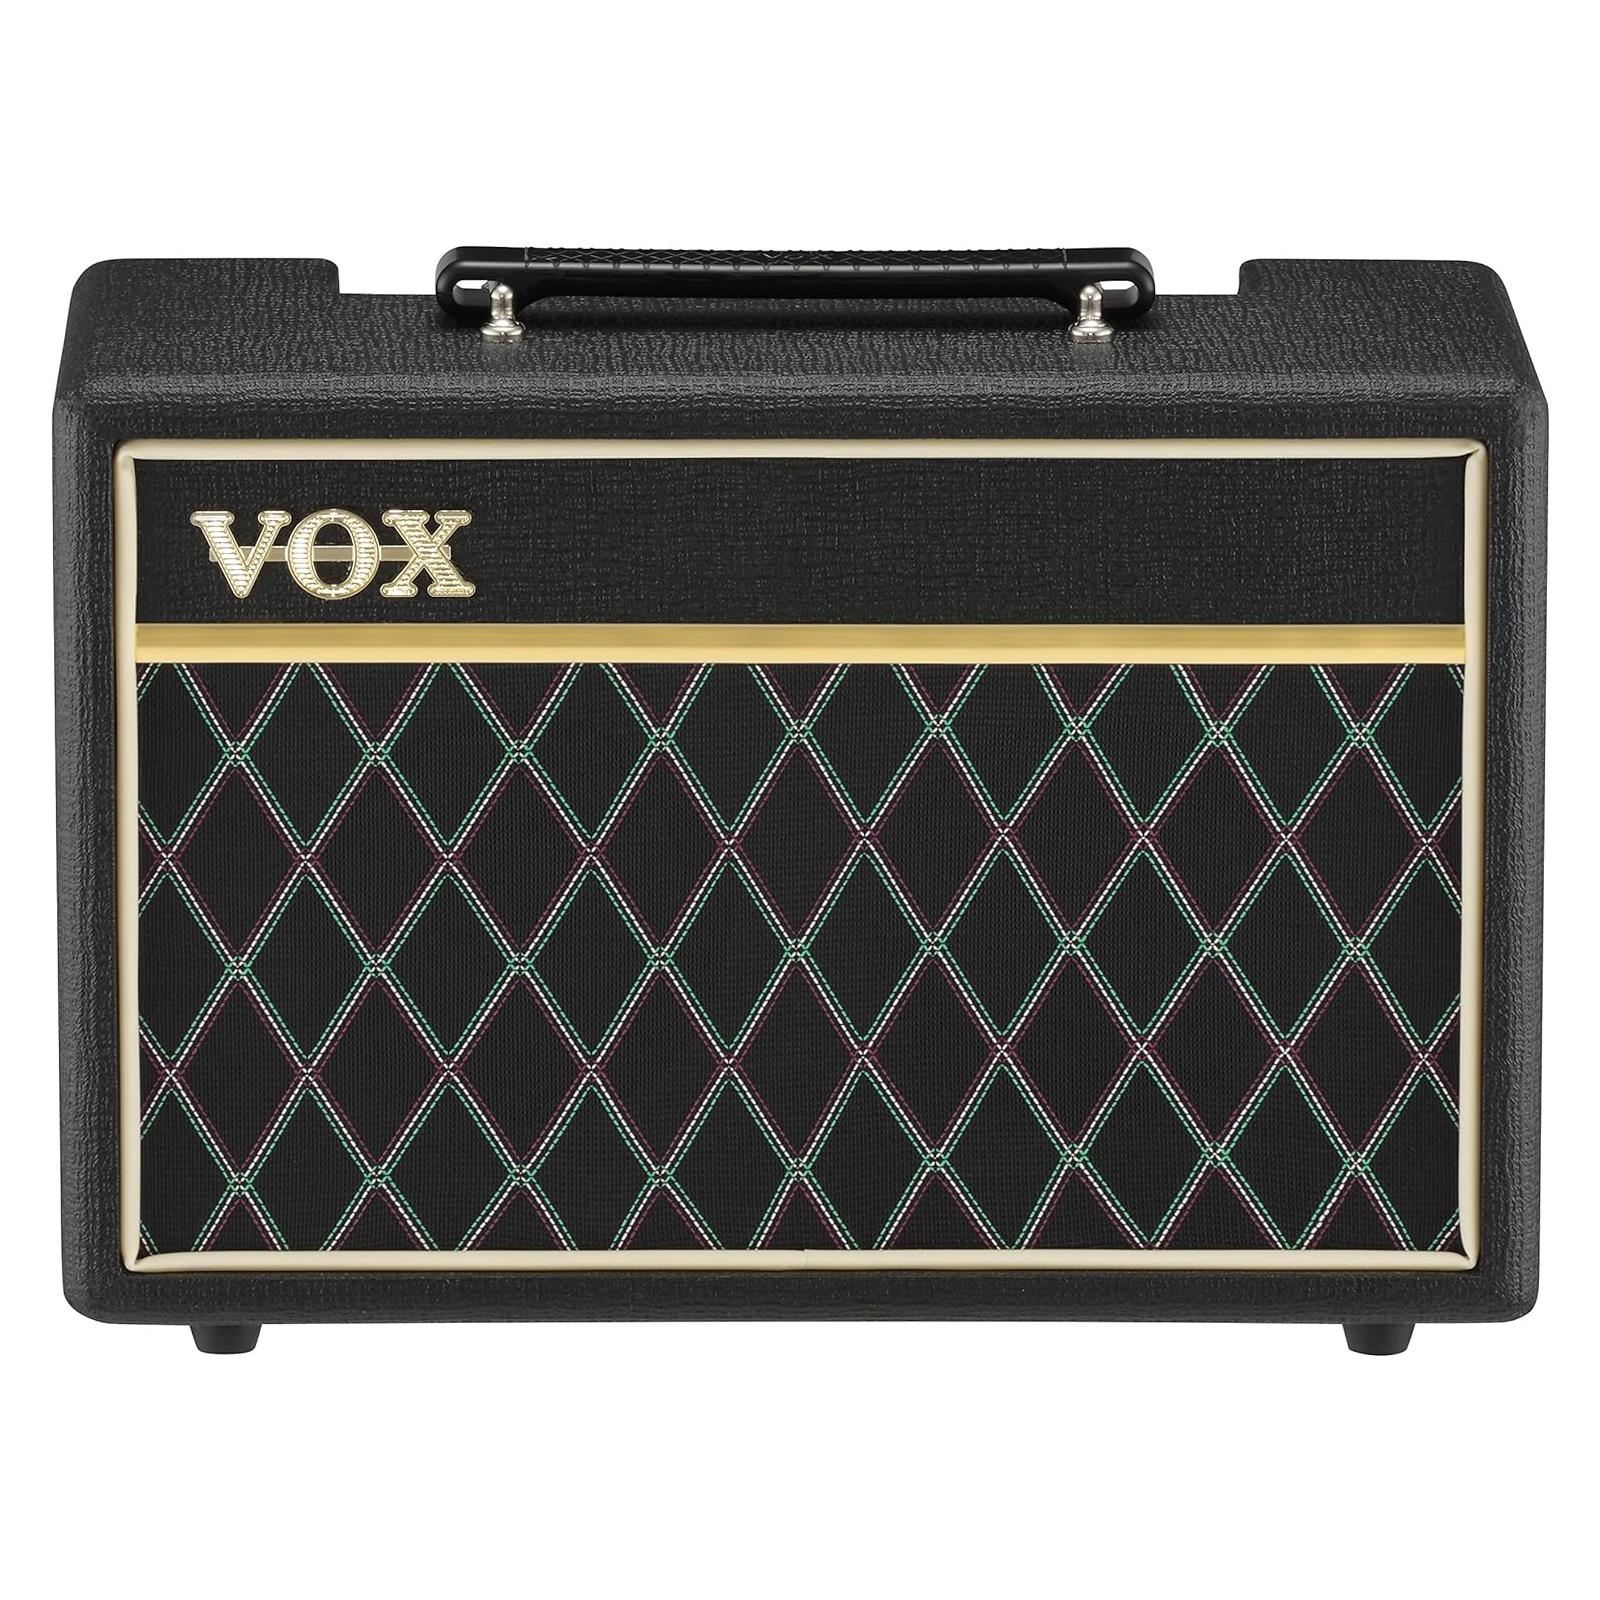 VOX Bass Combo